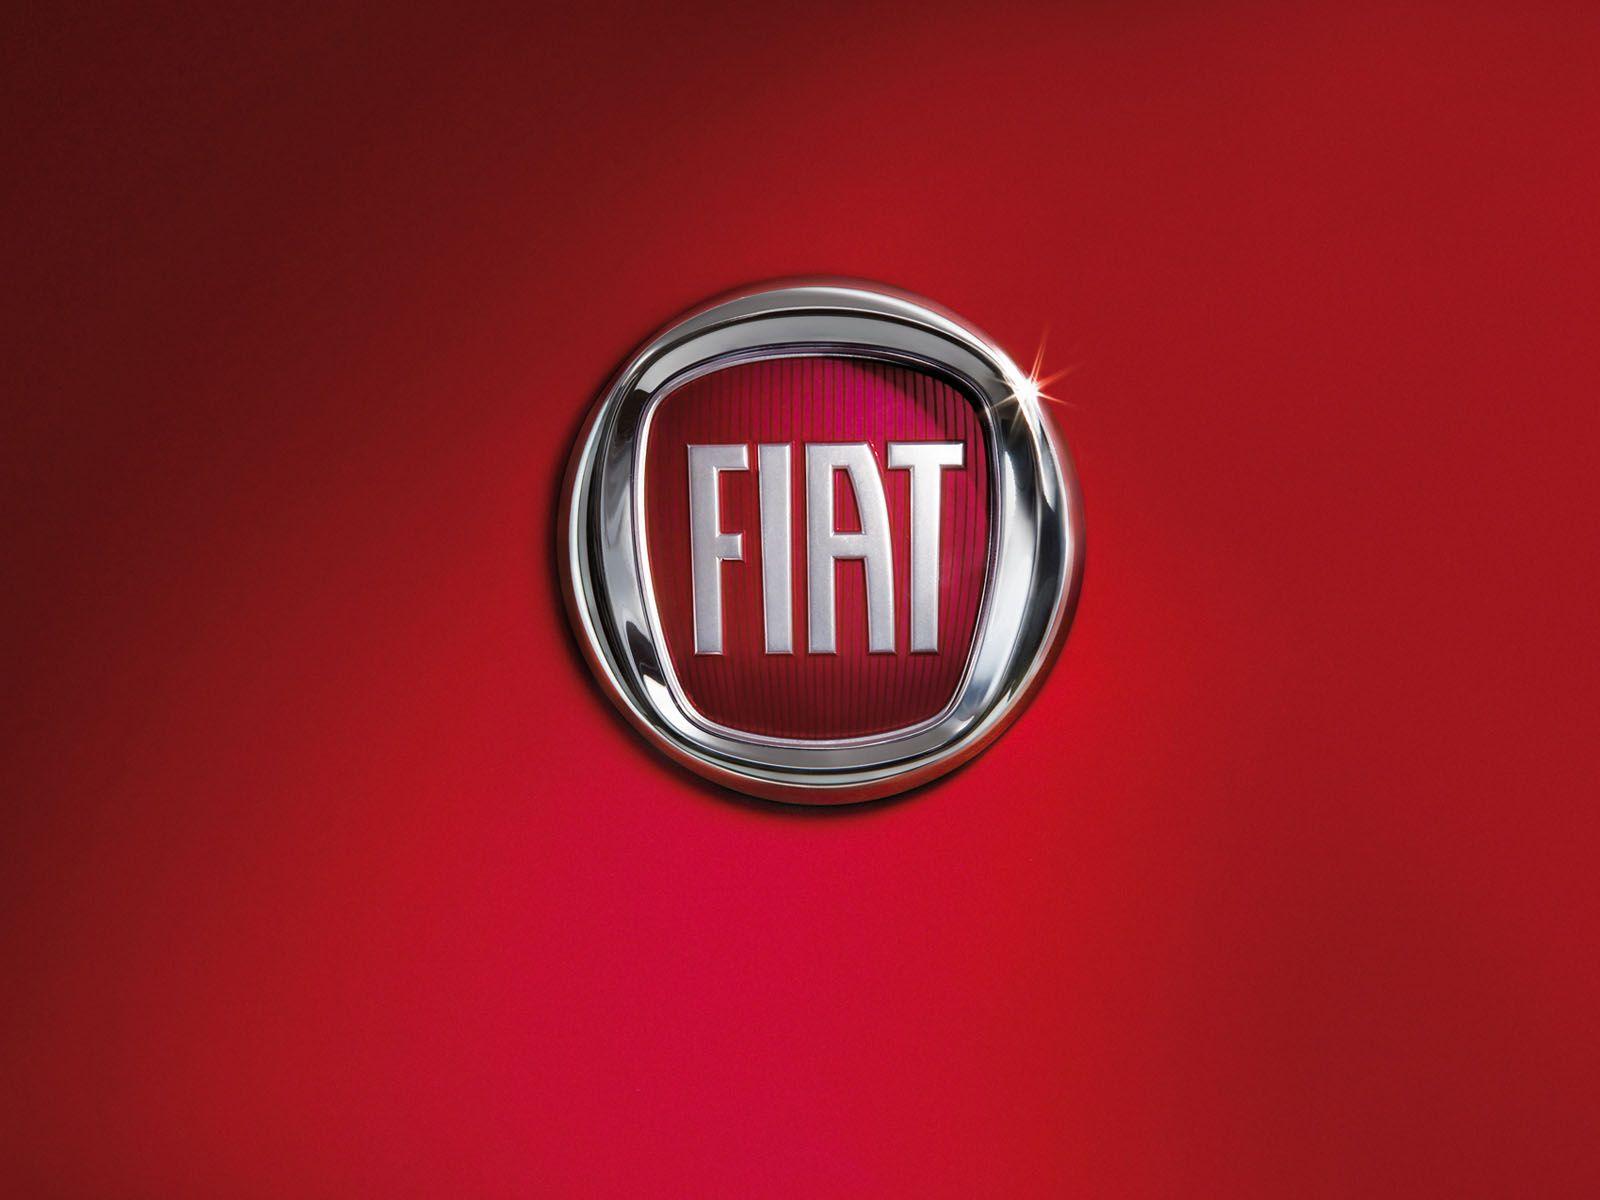 Fiat Logo - Fiat Logo, Fiat Car Symbol Meaning and History | Car Brand Names.com